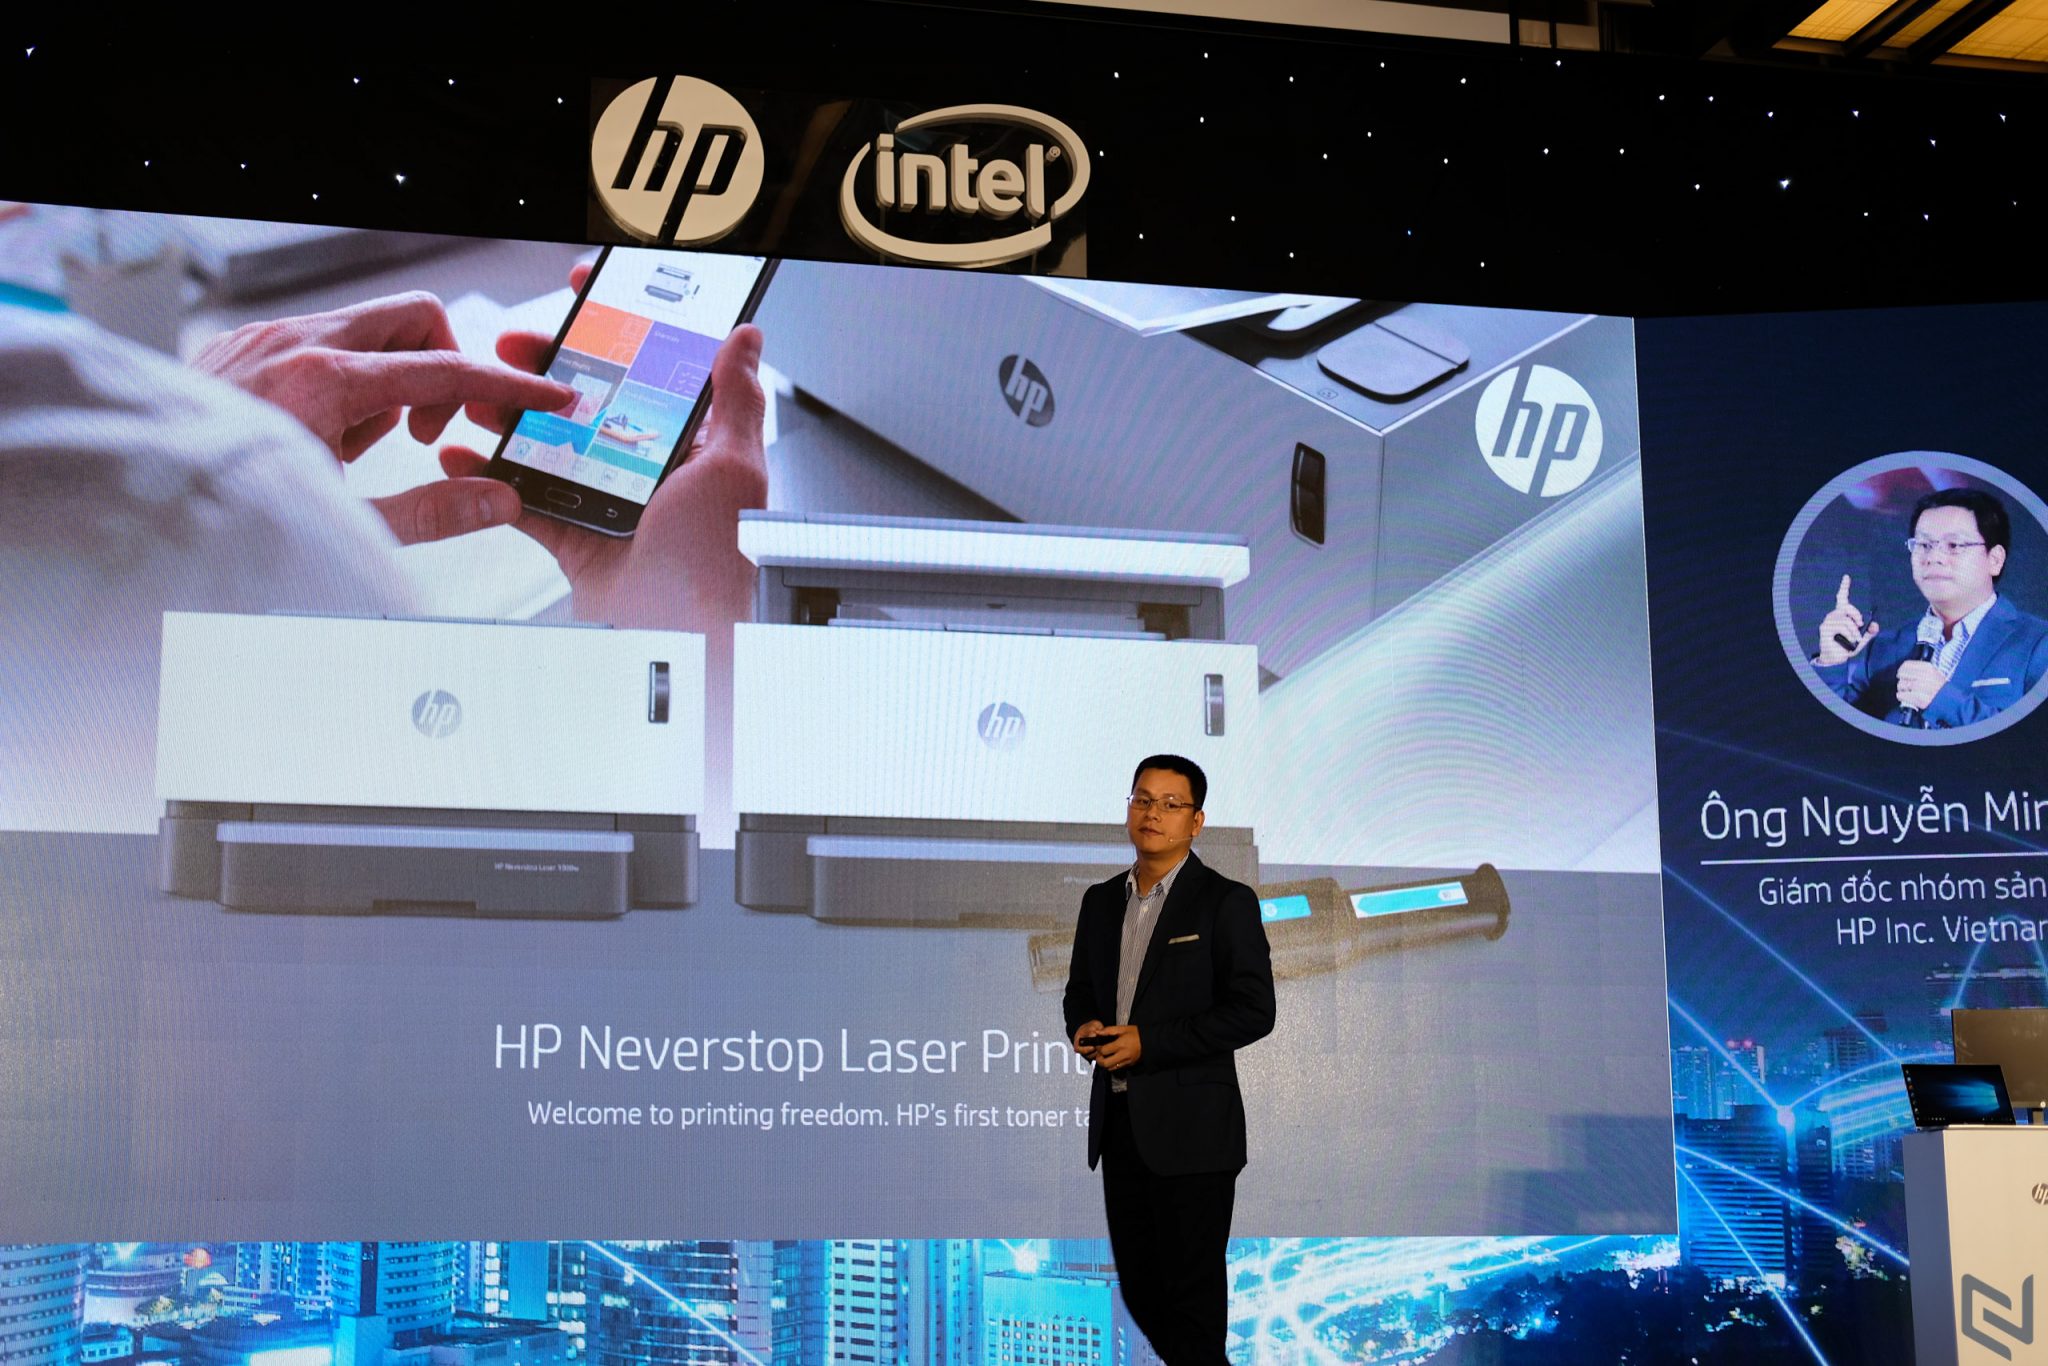 HP Việt Nam mang đến giải pháp dành cho doanh nghiệp vừa và nhỏ trong làn sóng Công nghiệp 4.0